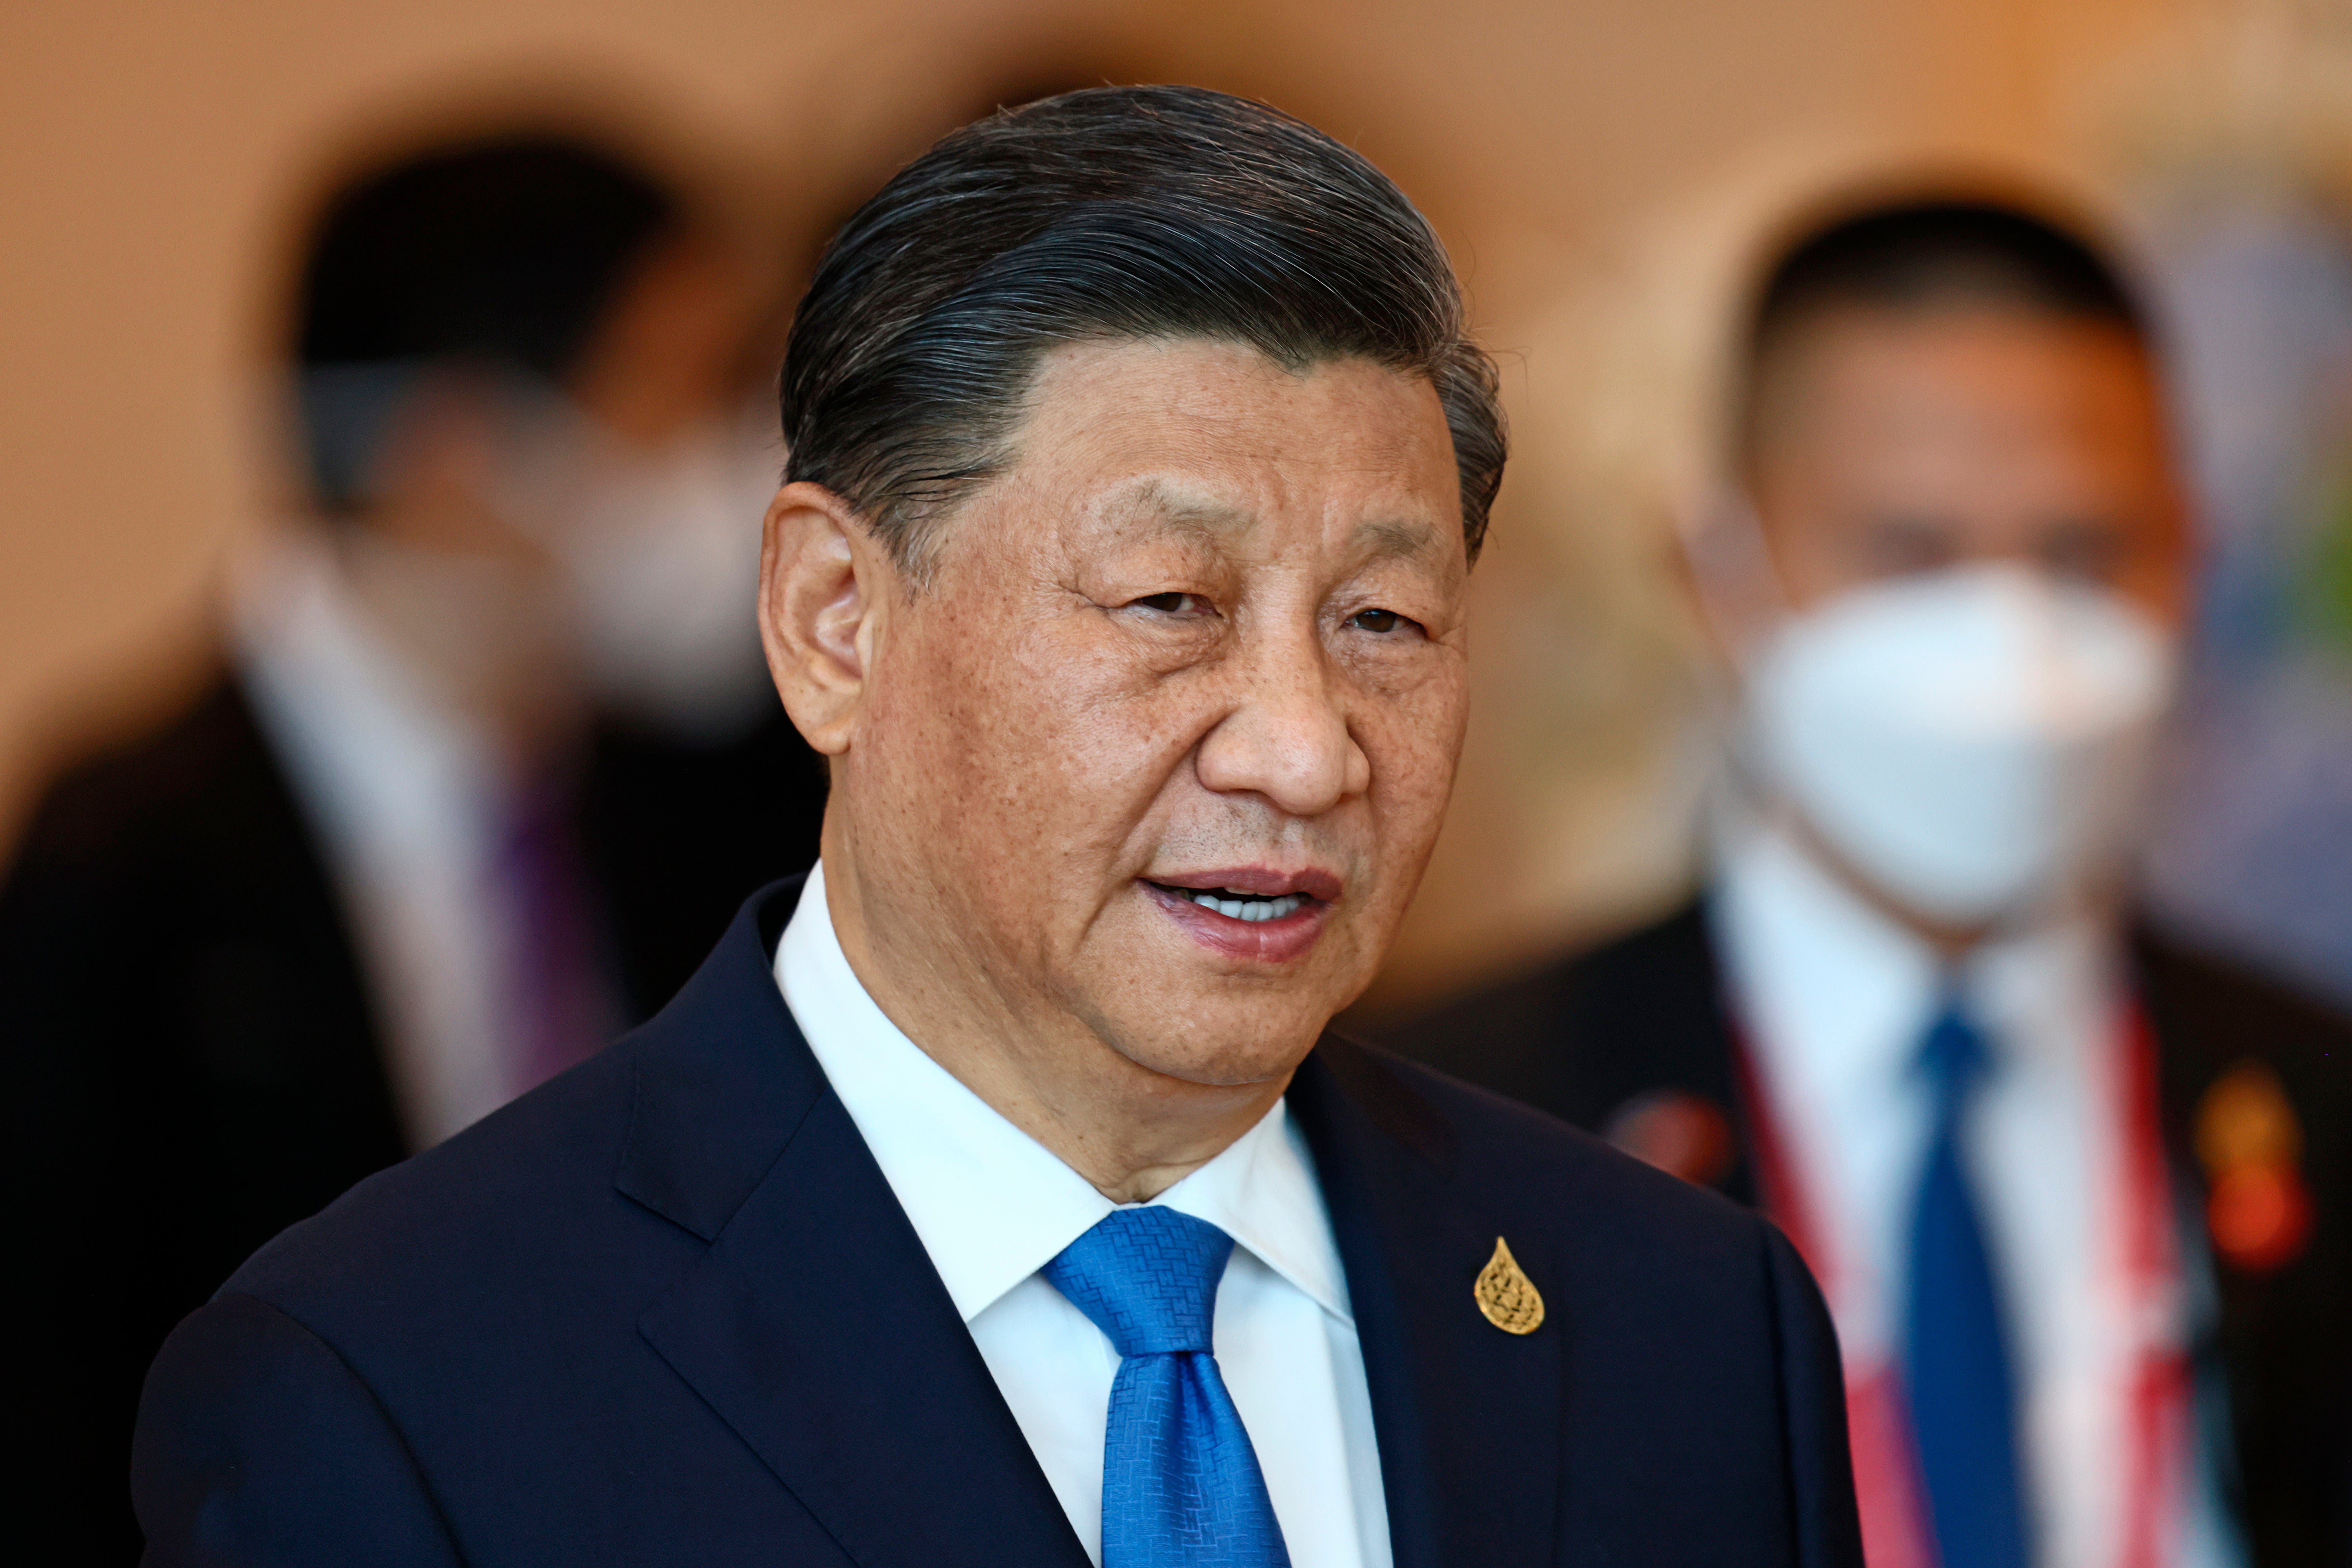 China’s president Xi Jinping